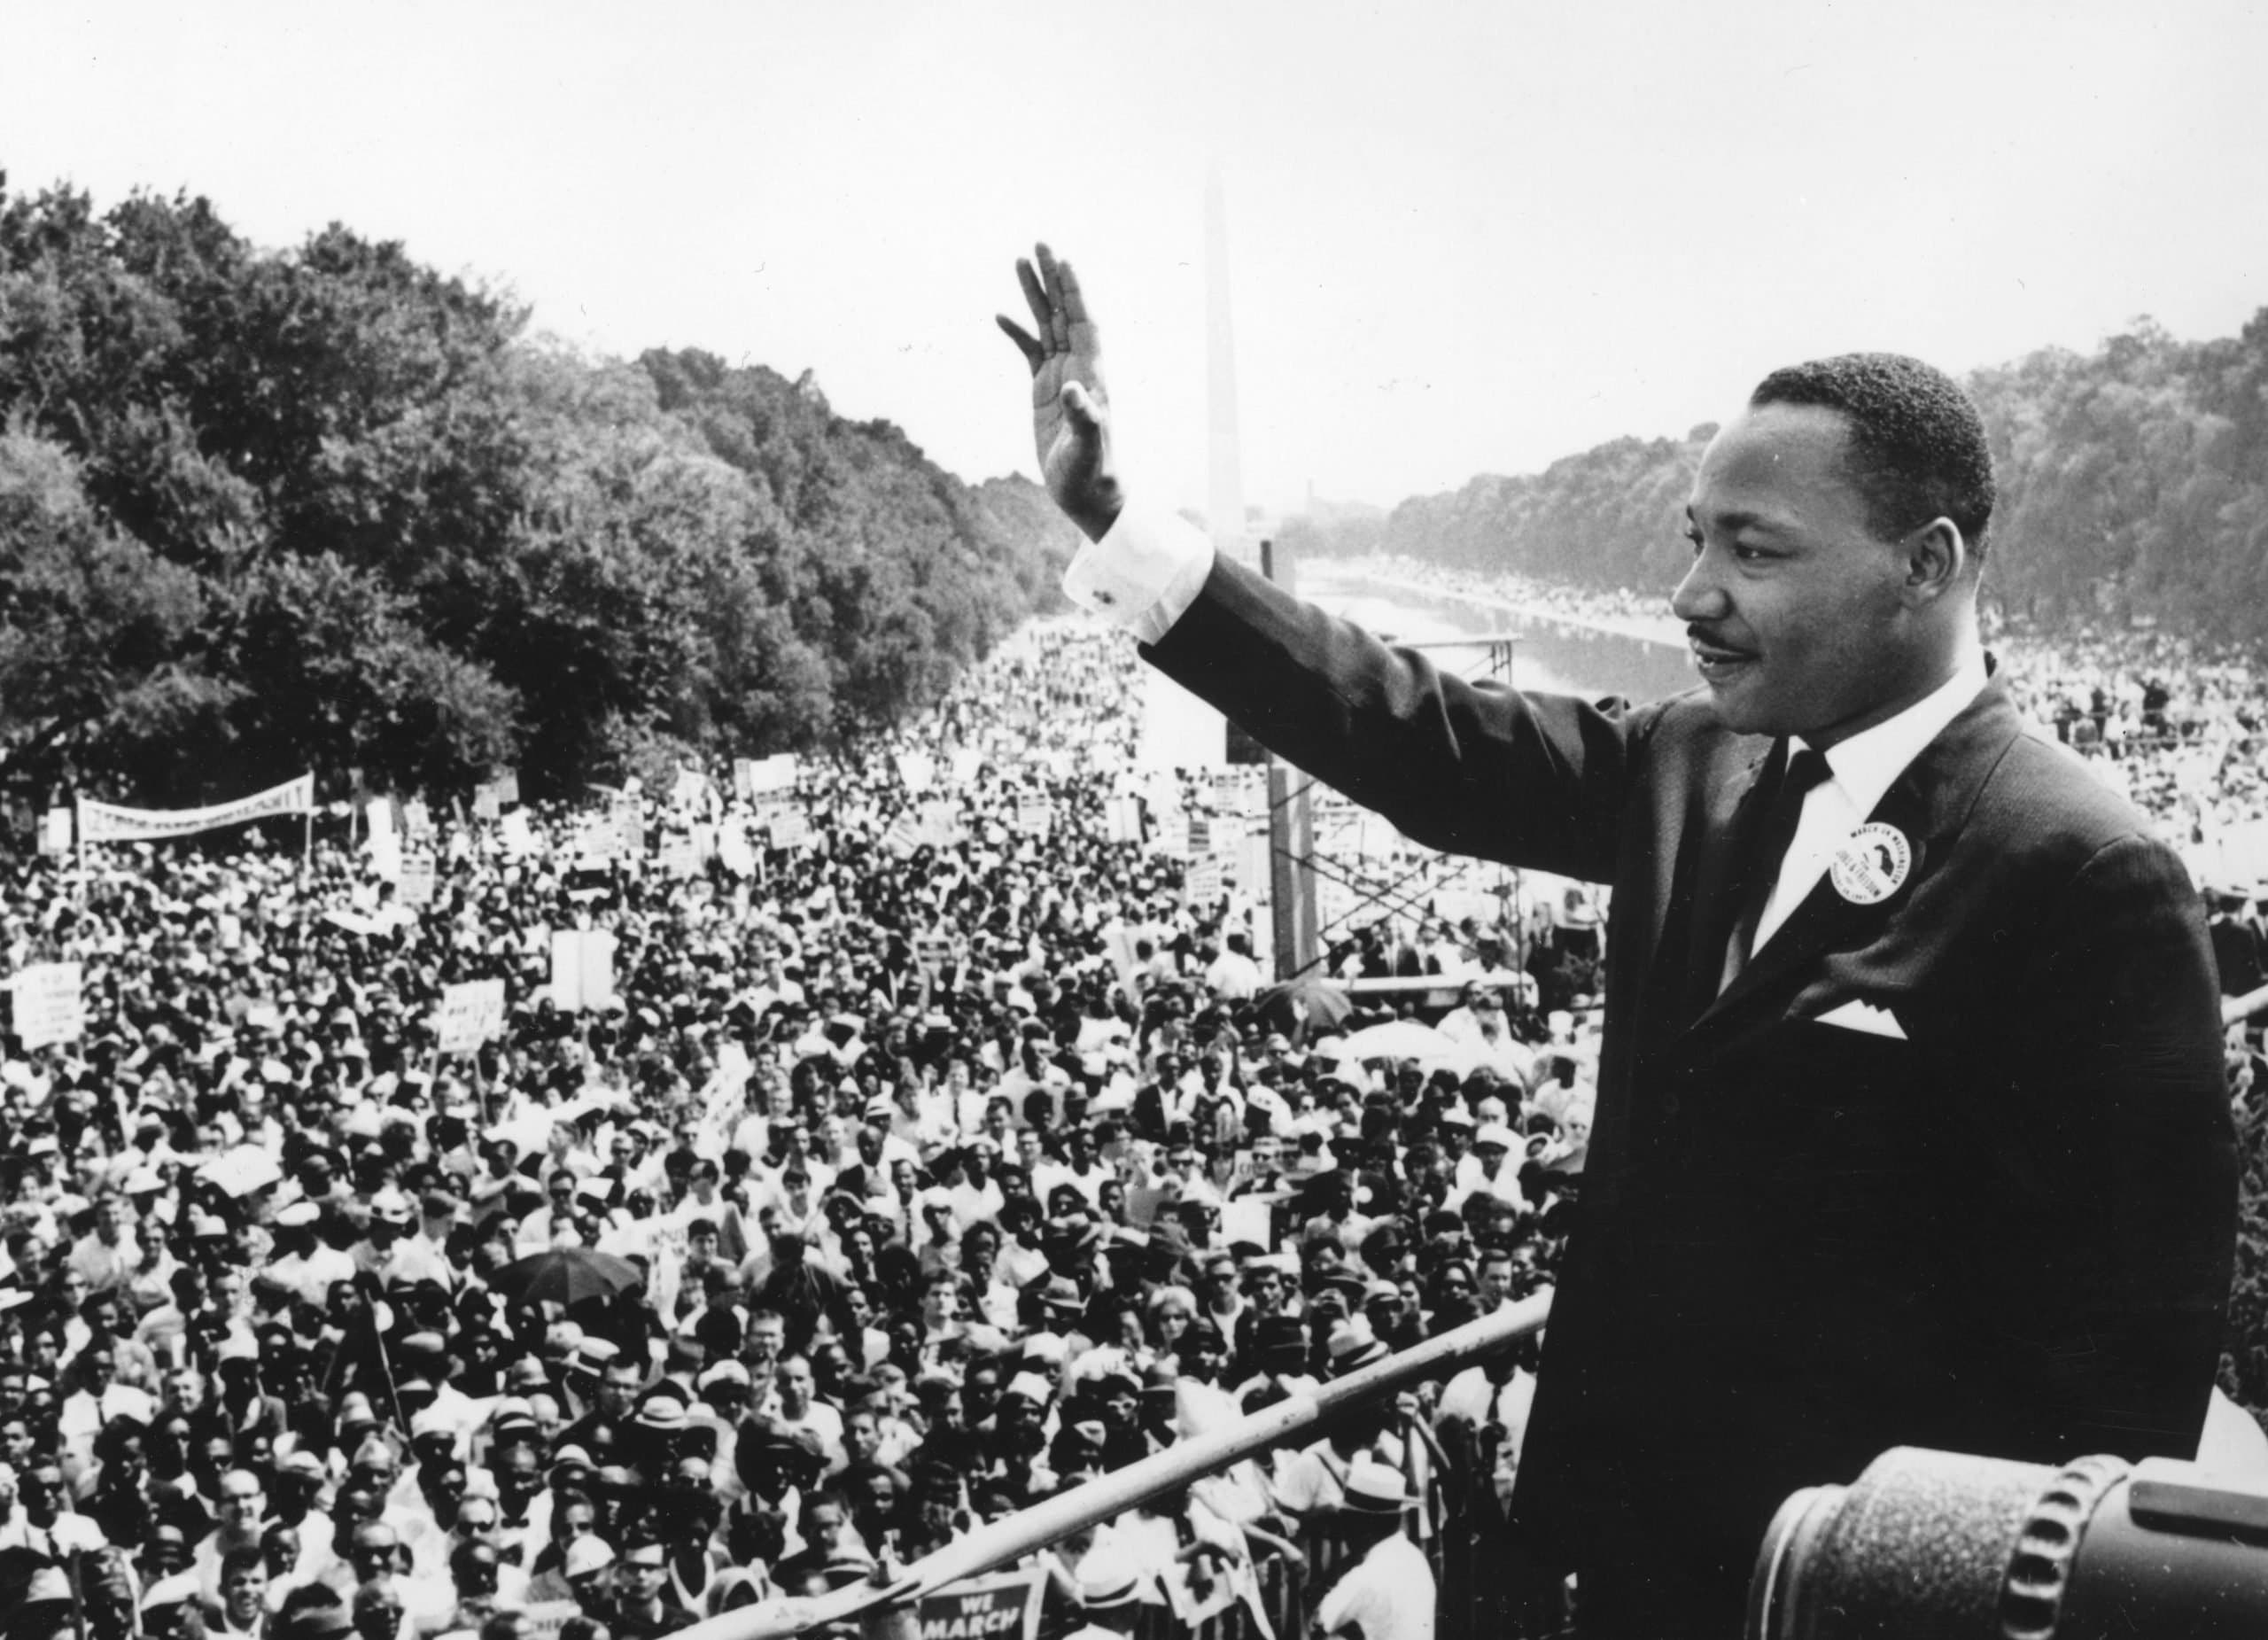 “I have a dream”: manifestação antirracista em Washington lembra discurso de Martin Luther King